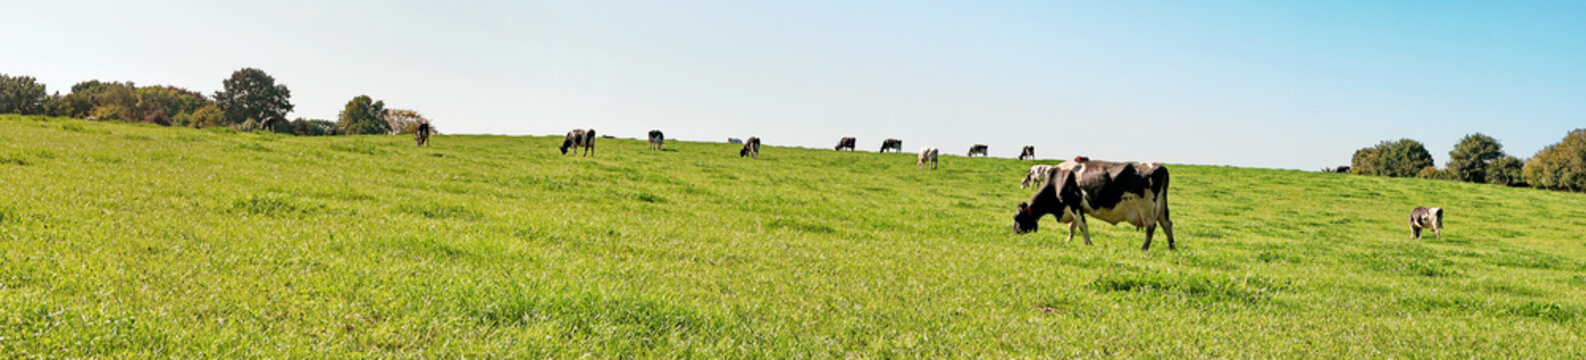 Kühe auf einer Weide im Sommer - Wiese Panorama